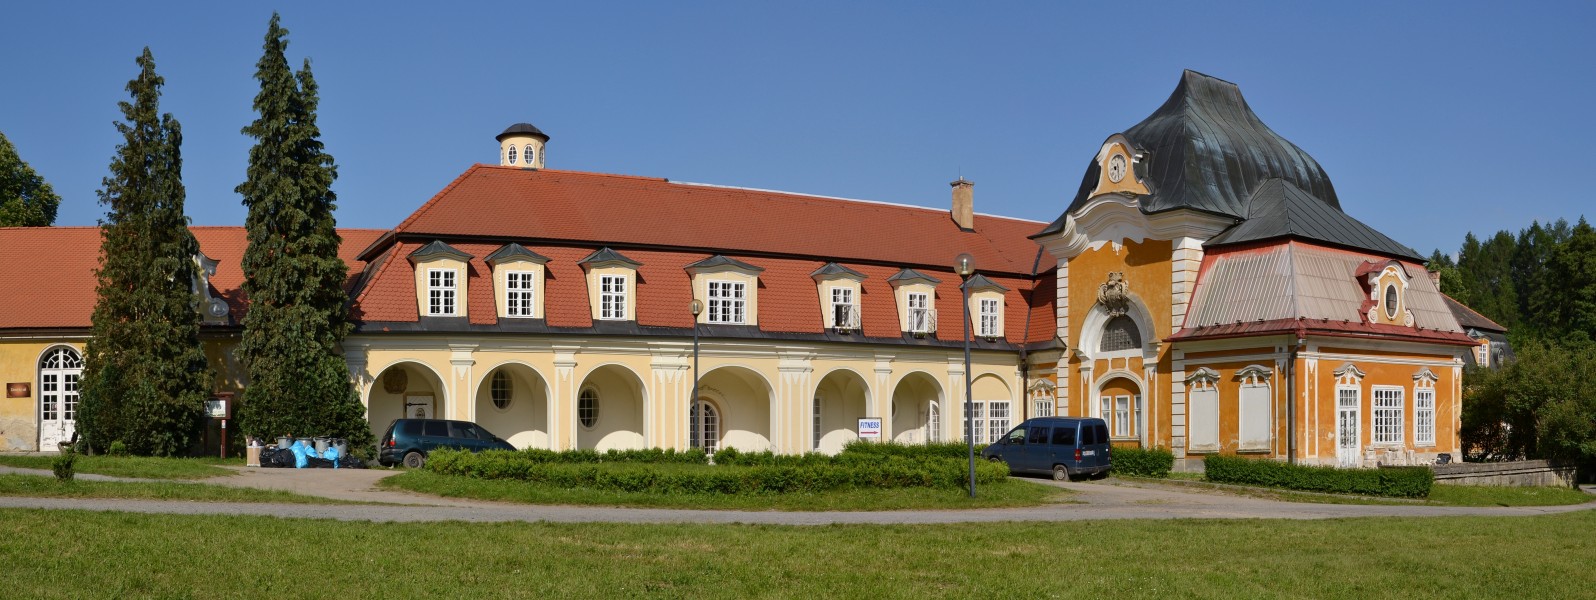 Velké Opatovice (Groß Opatowitz) - zámek pano